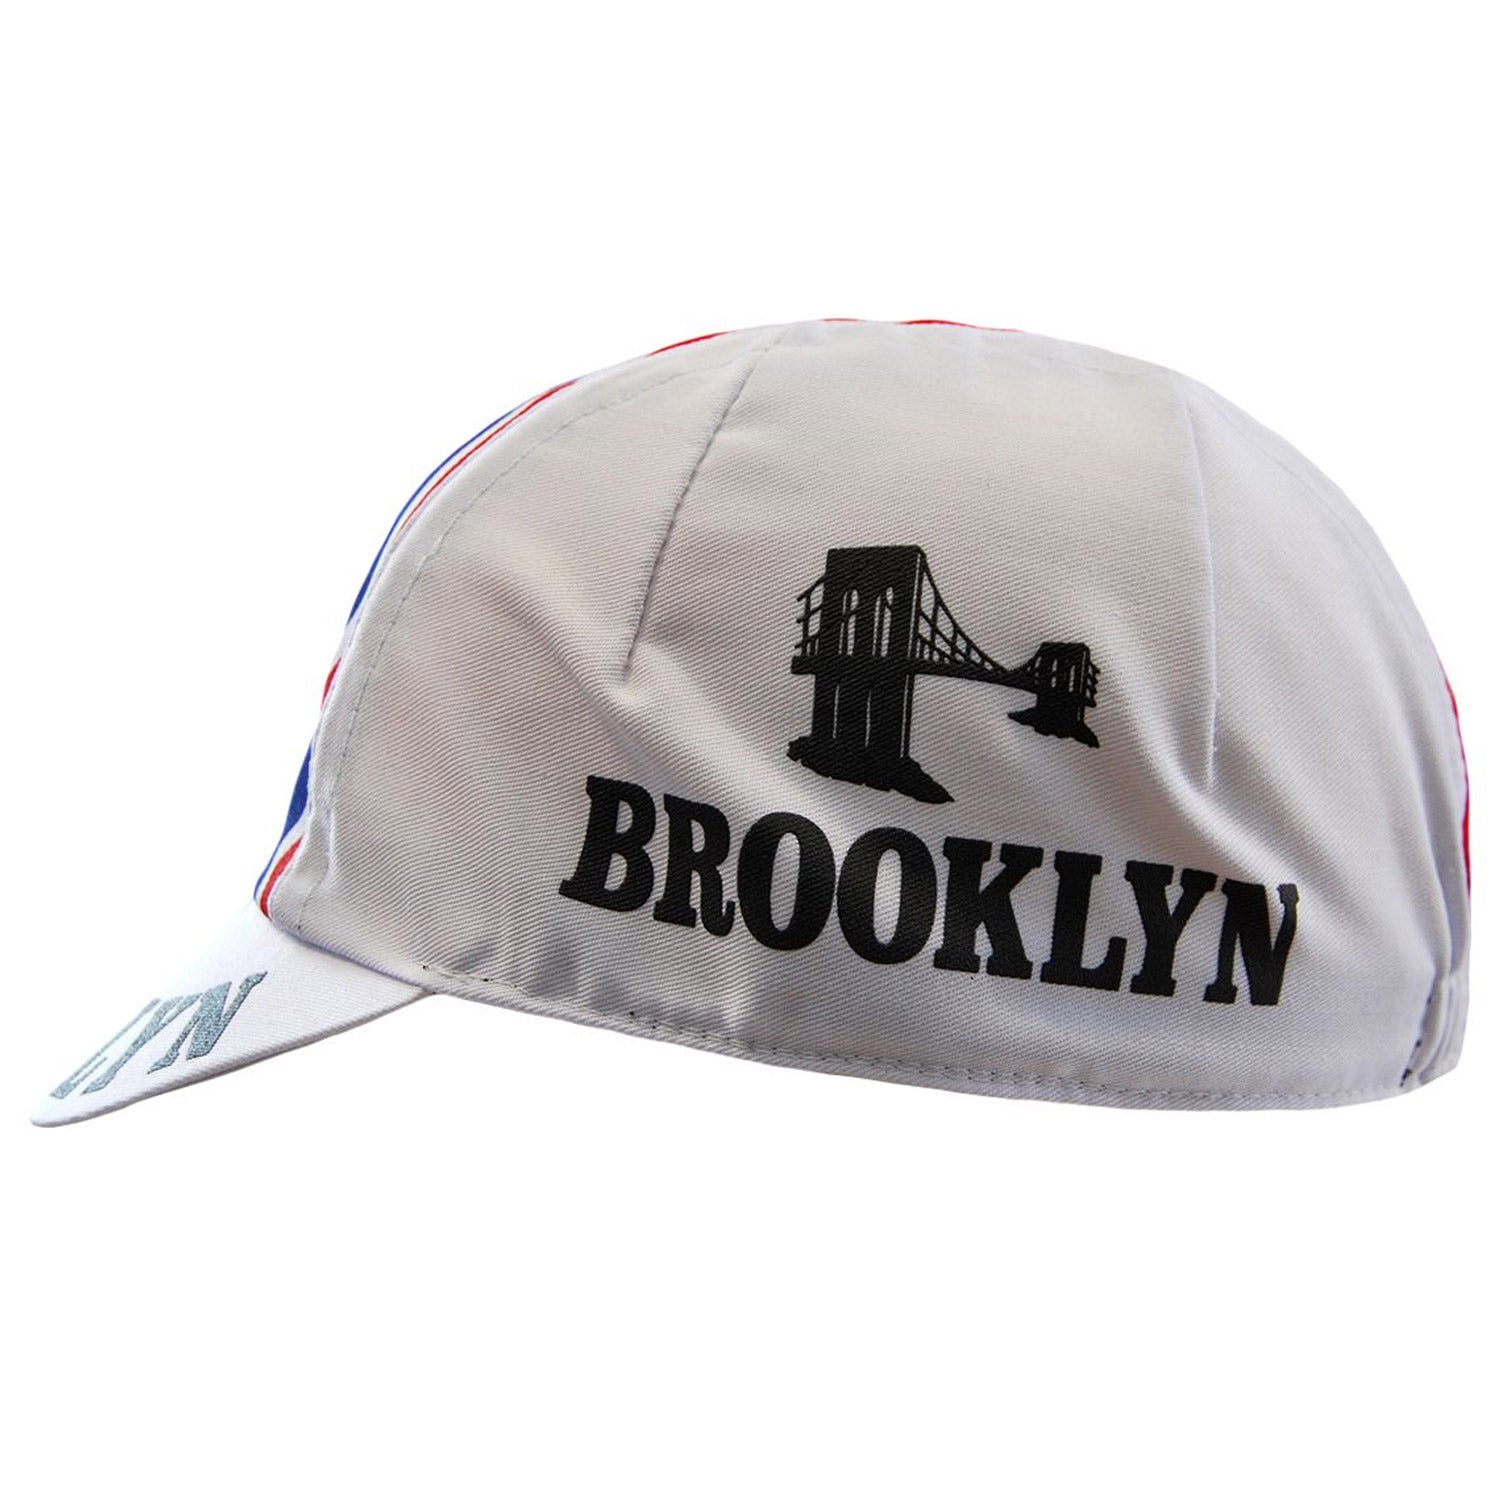 Gorra Headdy Brooklyn - Blanco